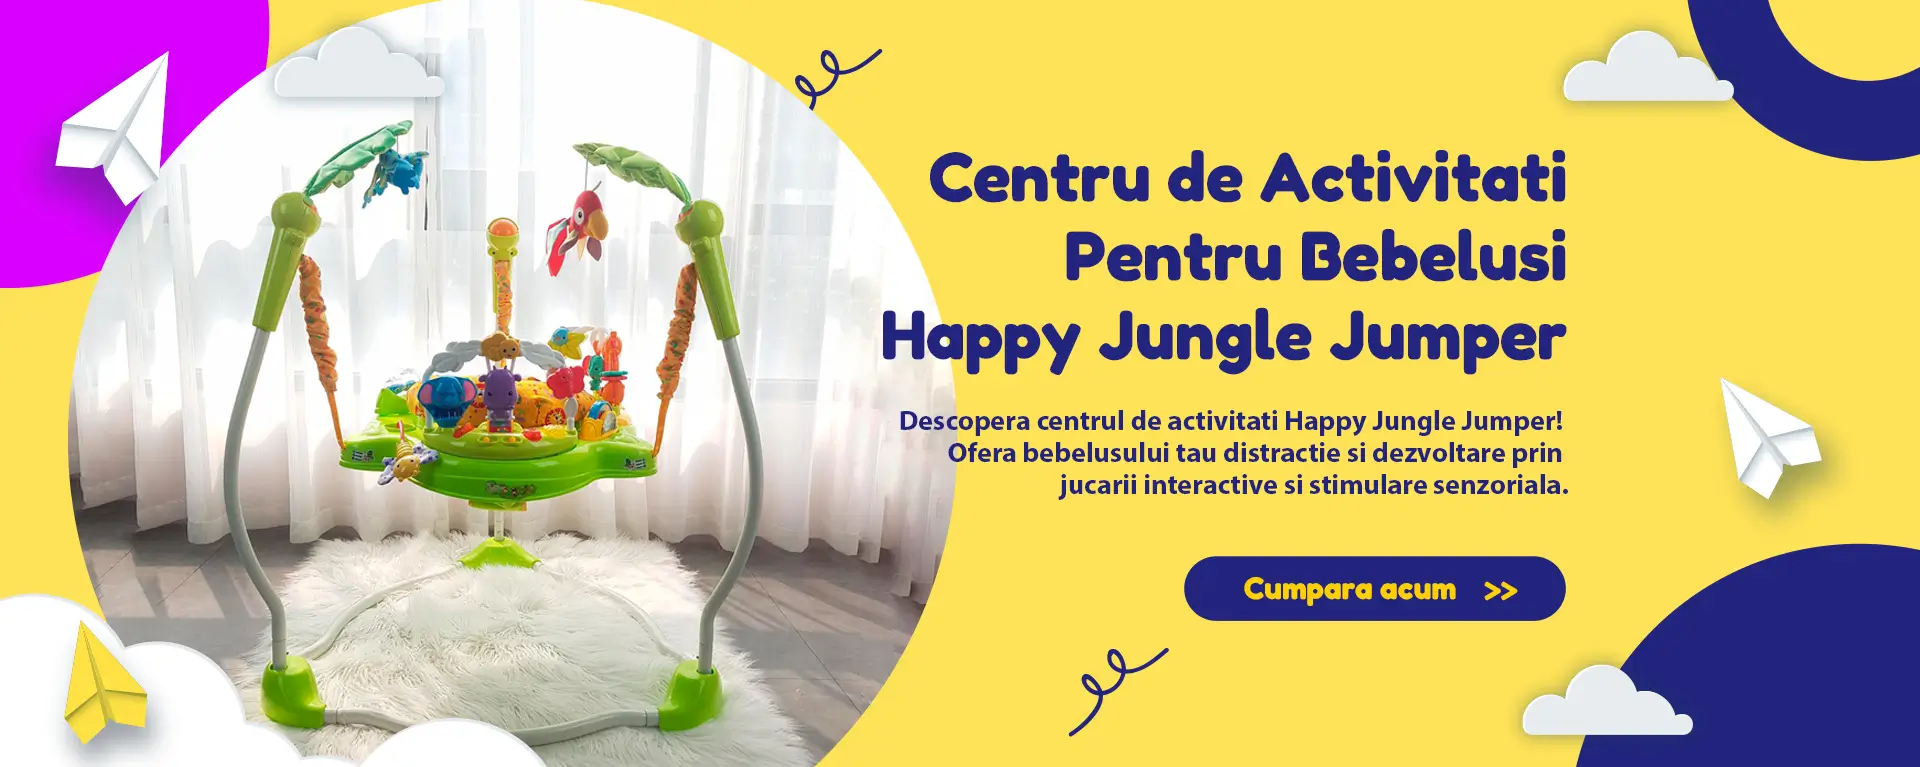 Centru de Activitati Bebelusi Happy Jungle Jumper